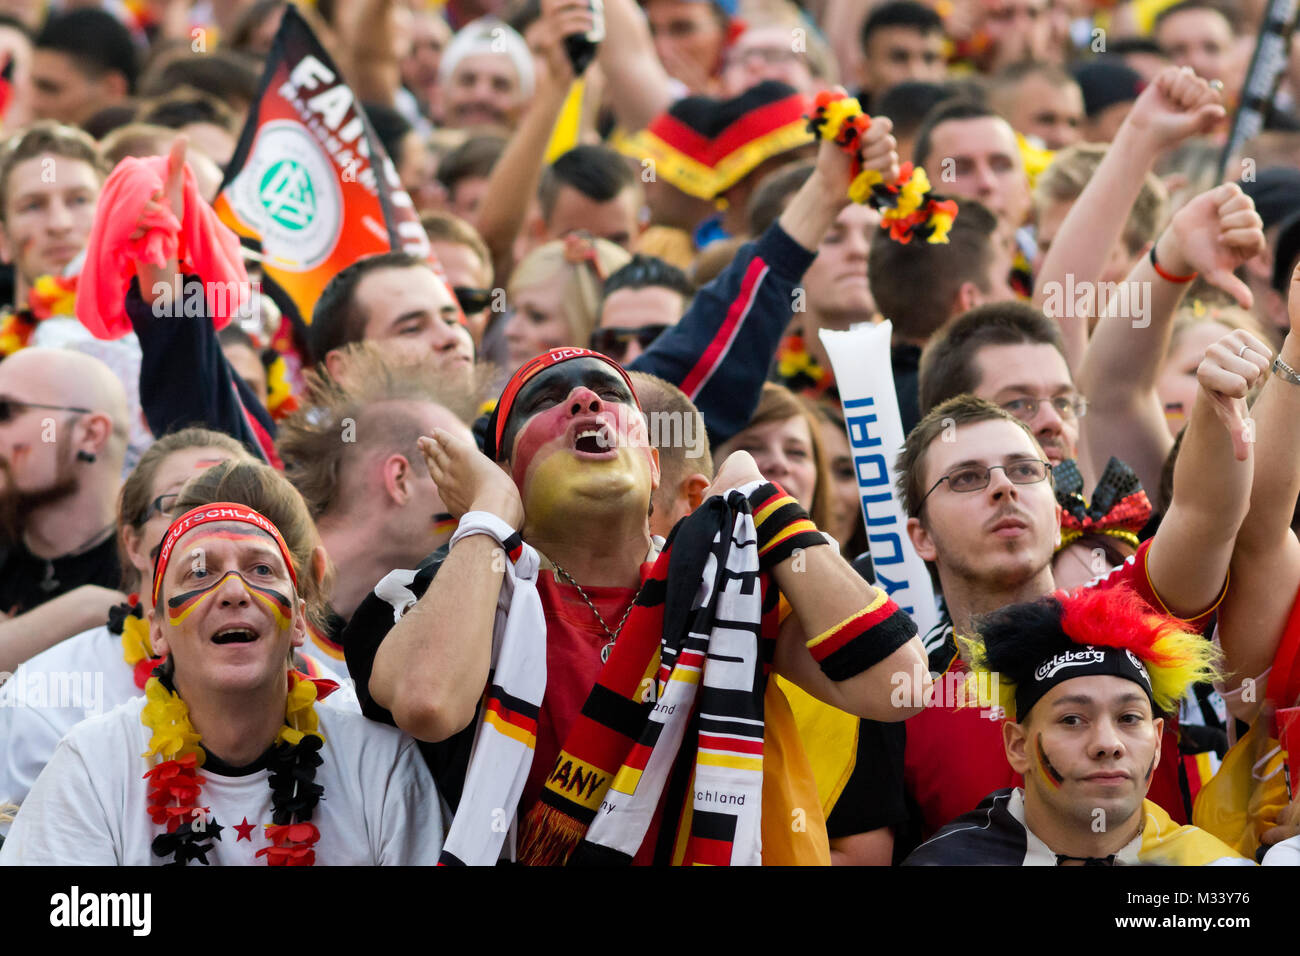 Menschenmassen verfolgen auf der riesigen Leinwand und freuen sich auf derFanmeile zur Europameisterschaft 2012 Deutschland gegen Griechenland am Brandenburger Tor in Berlin Foto Stock